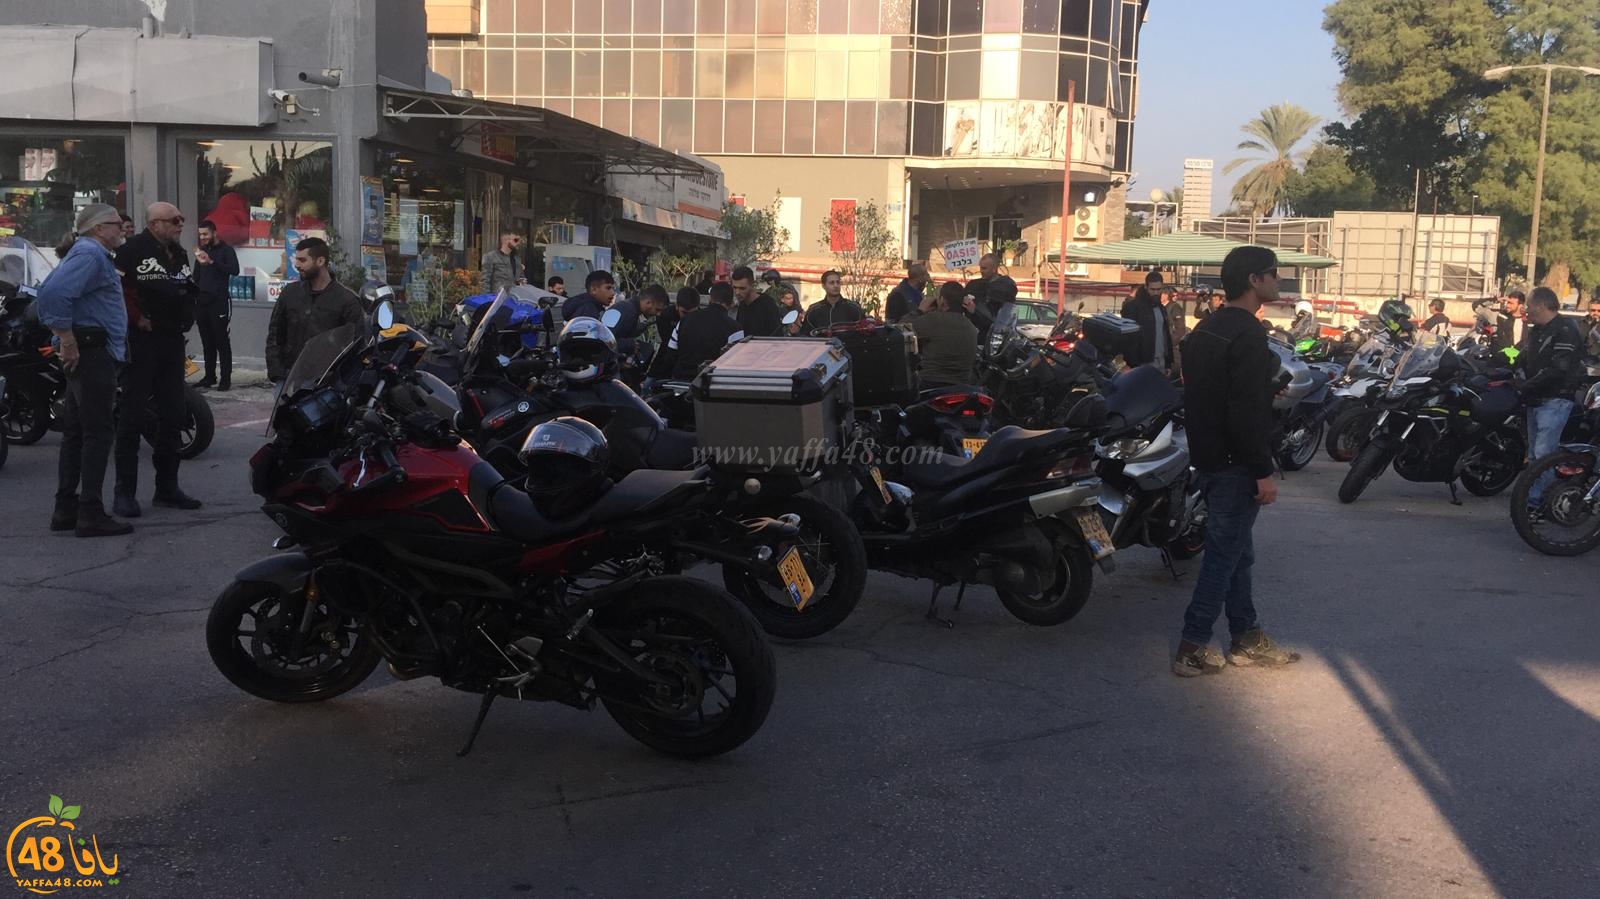  فيديو: تظاهرة لراكبي الدراجات النارية بيافا احتجاجاً على قانون المخالفات الجديد 